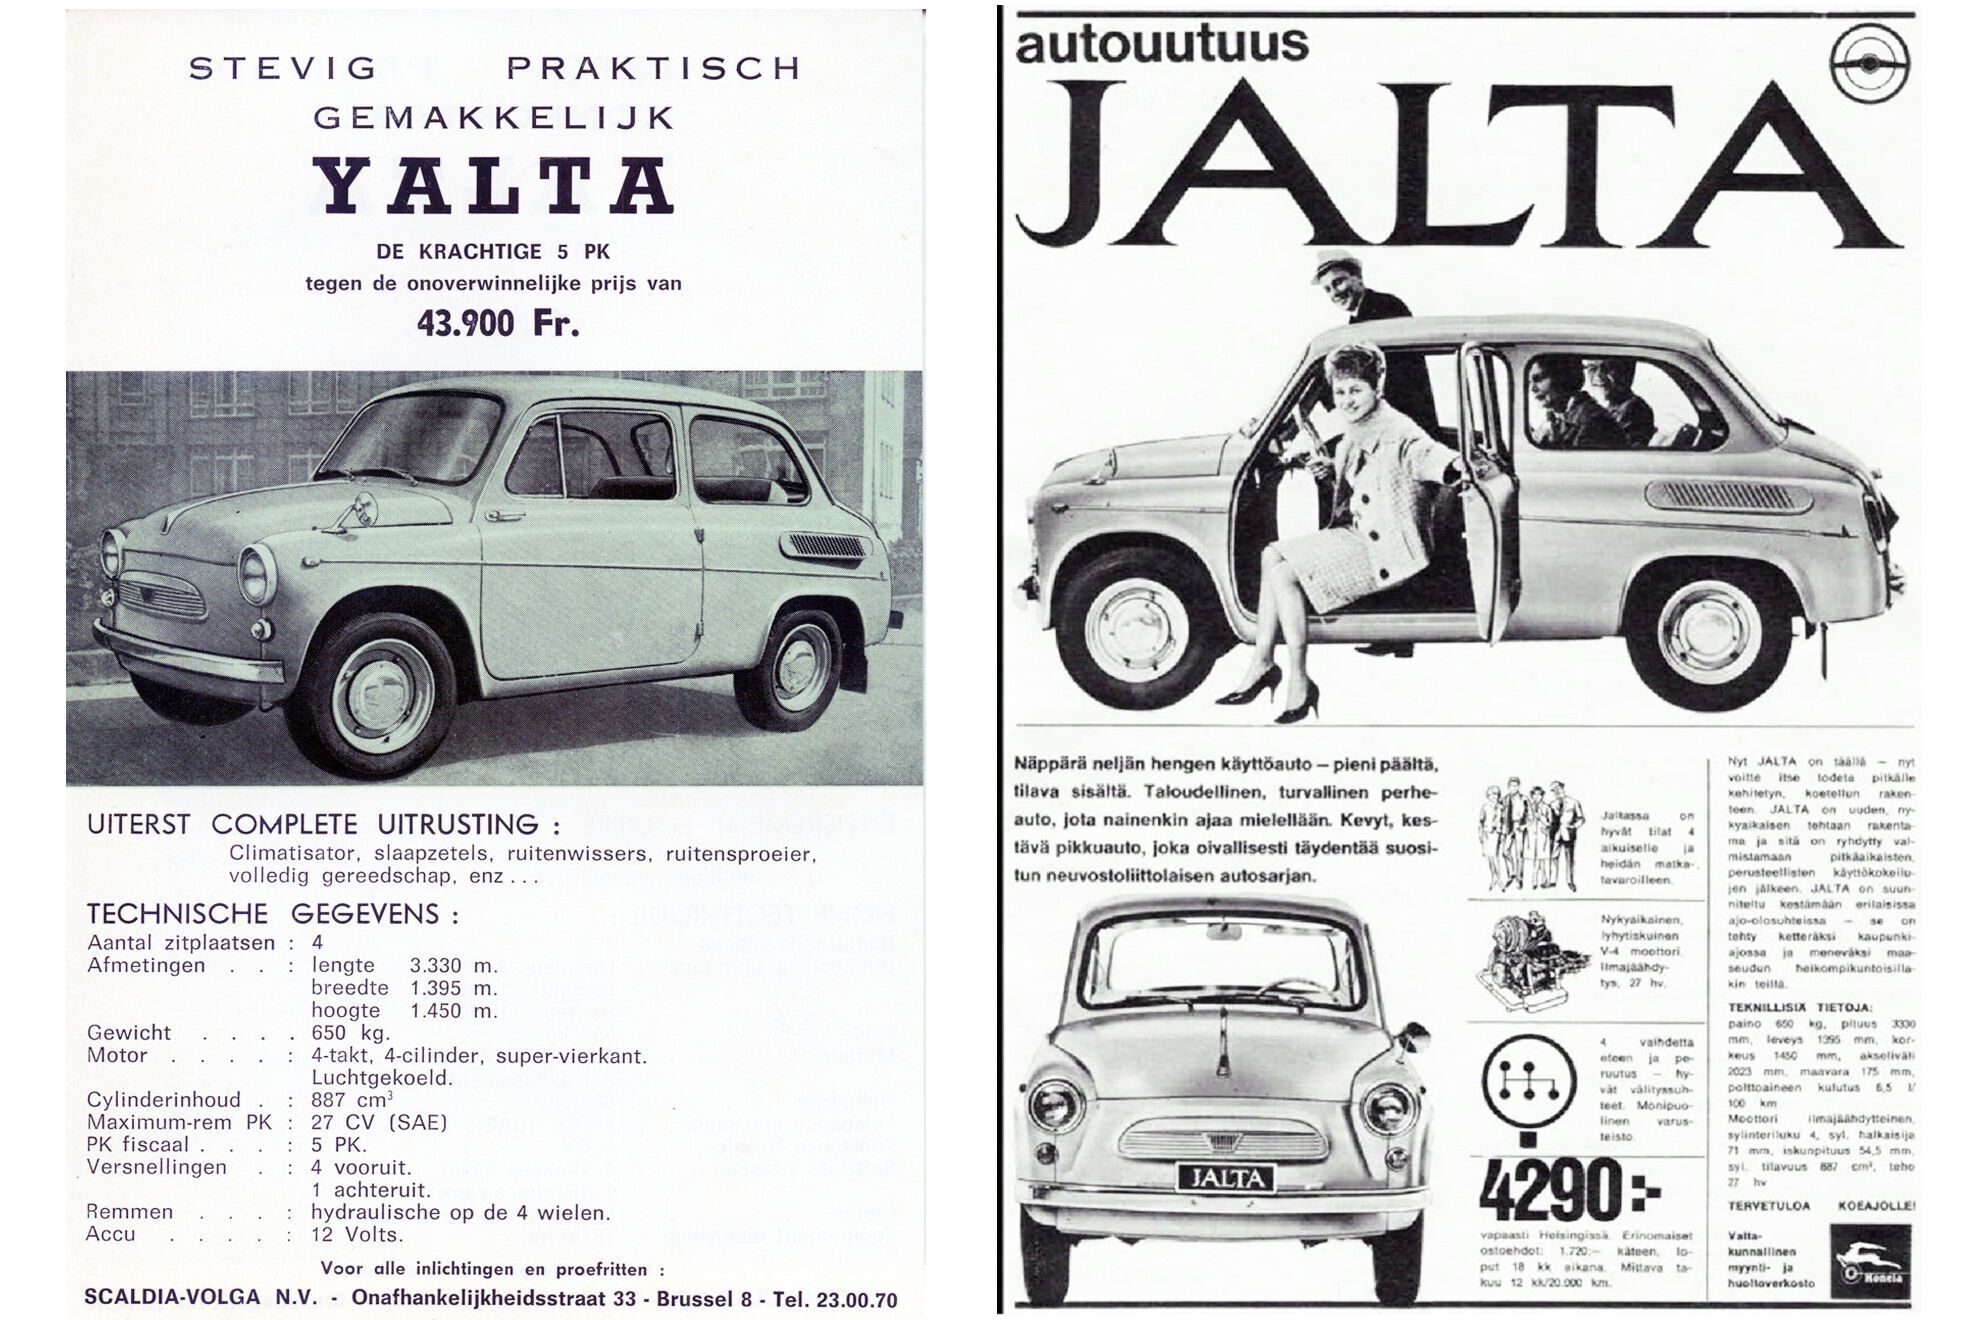 У Фінляндії ЗАЗ-965 продавався під ім'ям Jalta, а бельгійські покупці знали його, як Yalta. Фото: